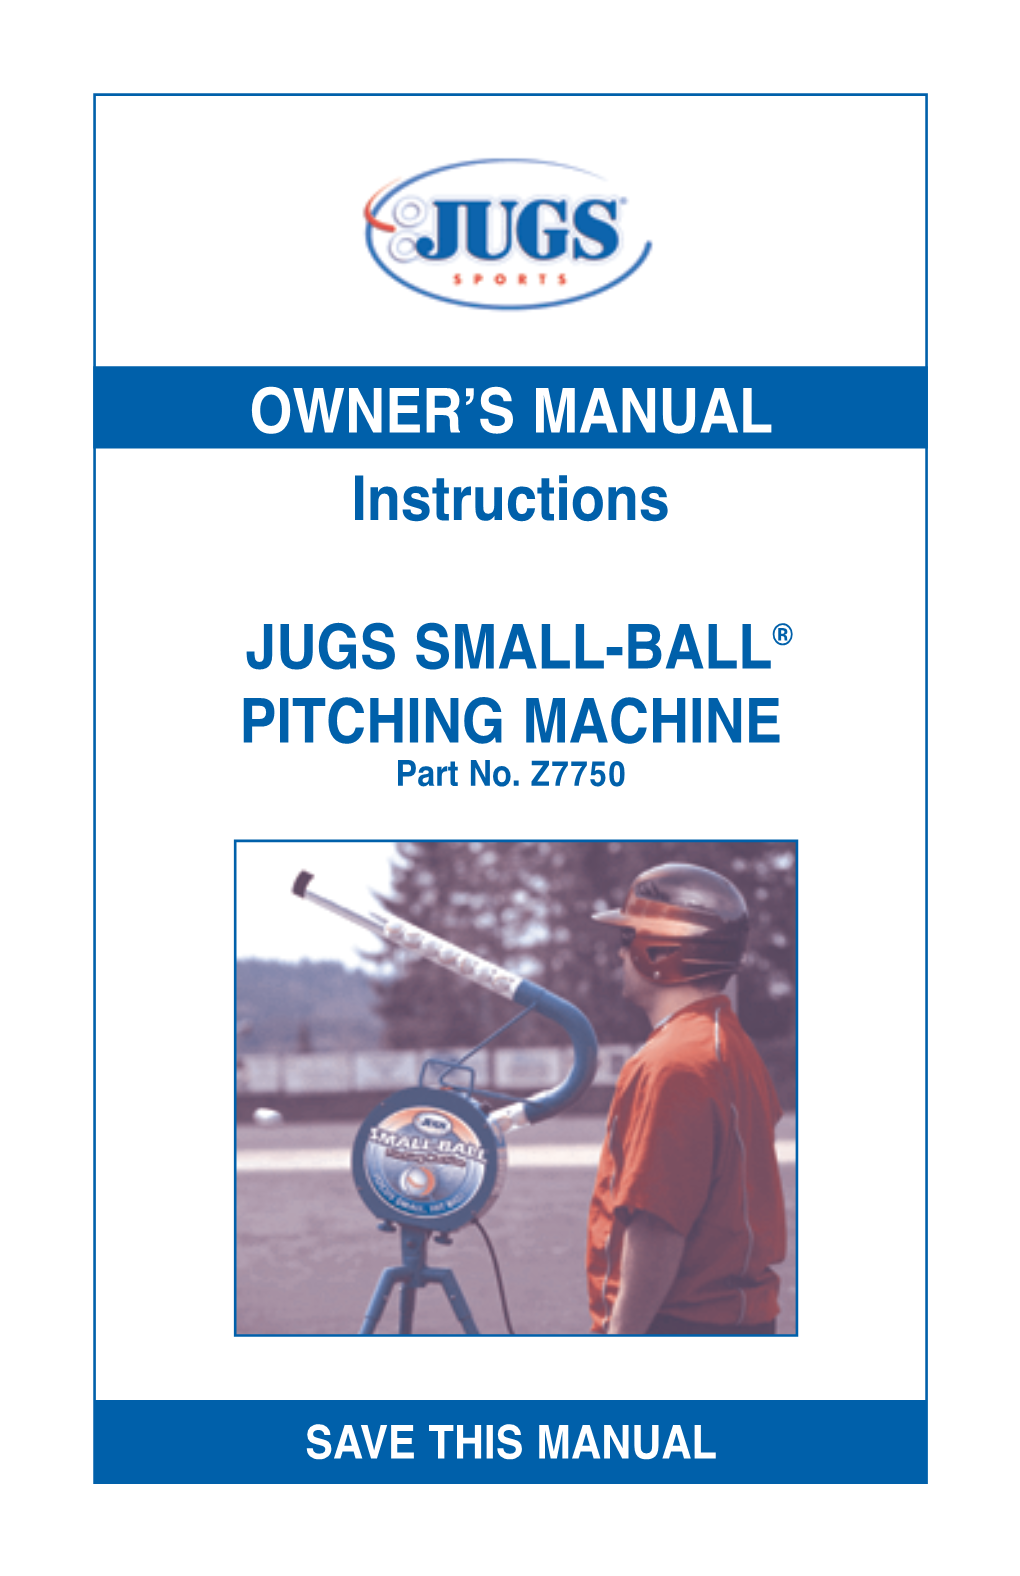 SMALL-BALL ® Pitching Machine